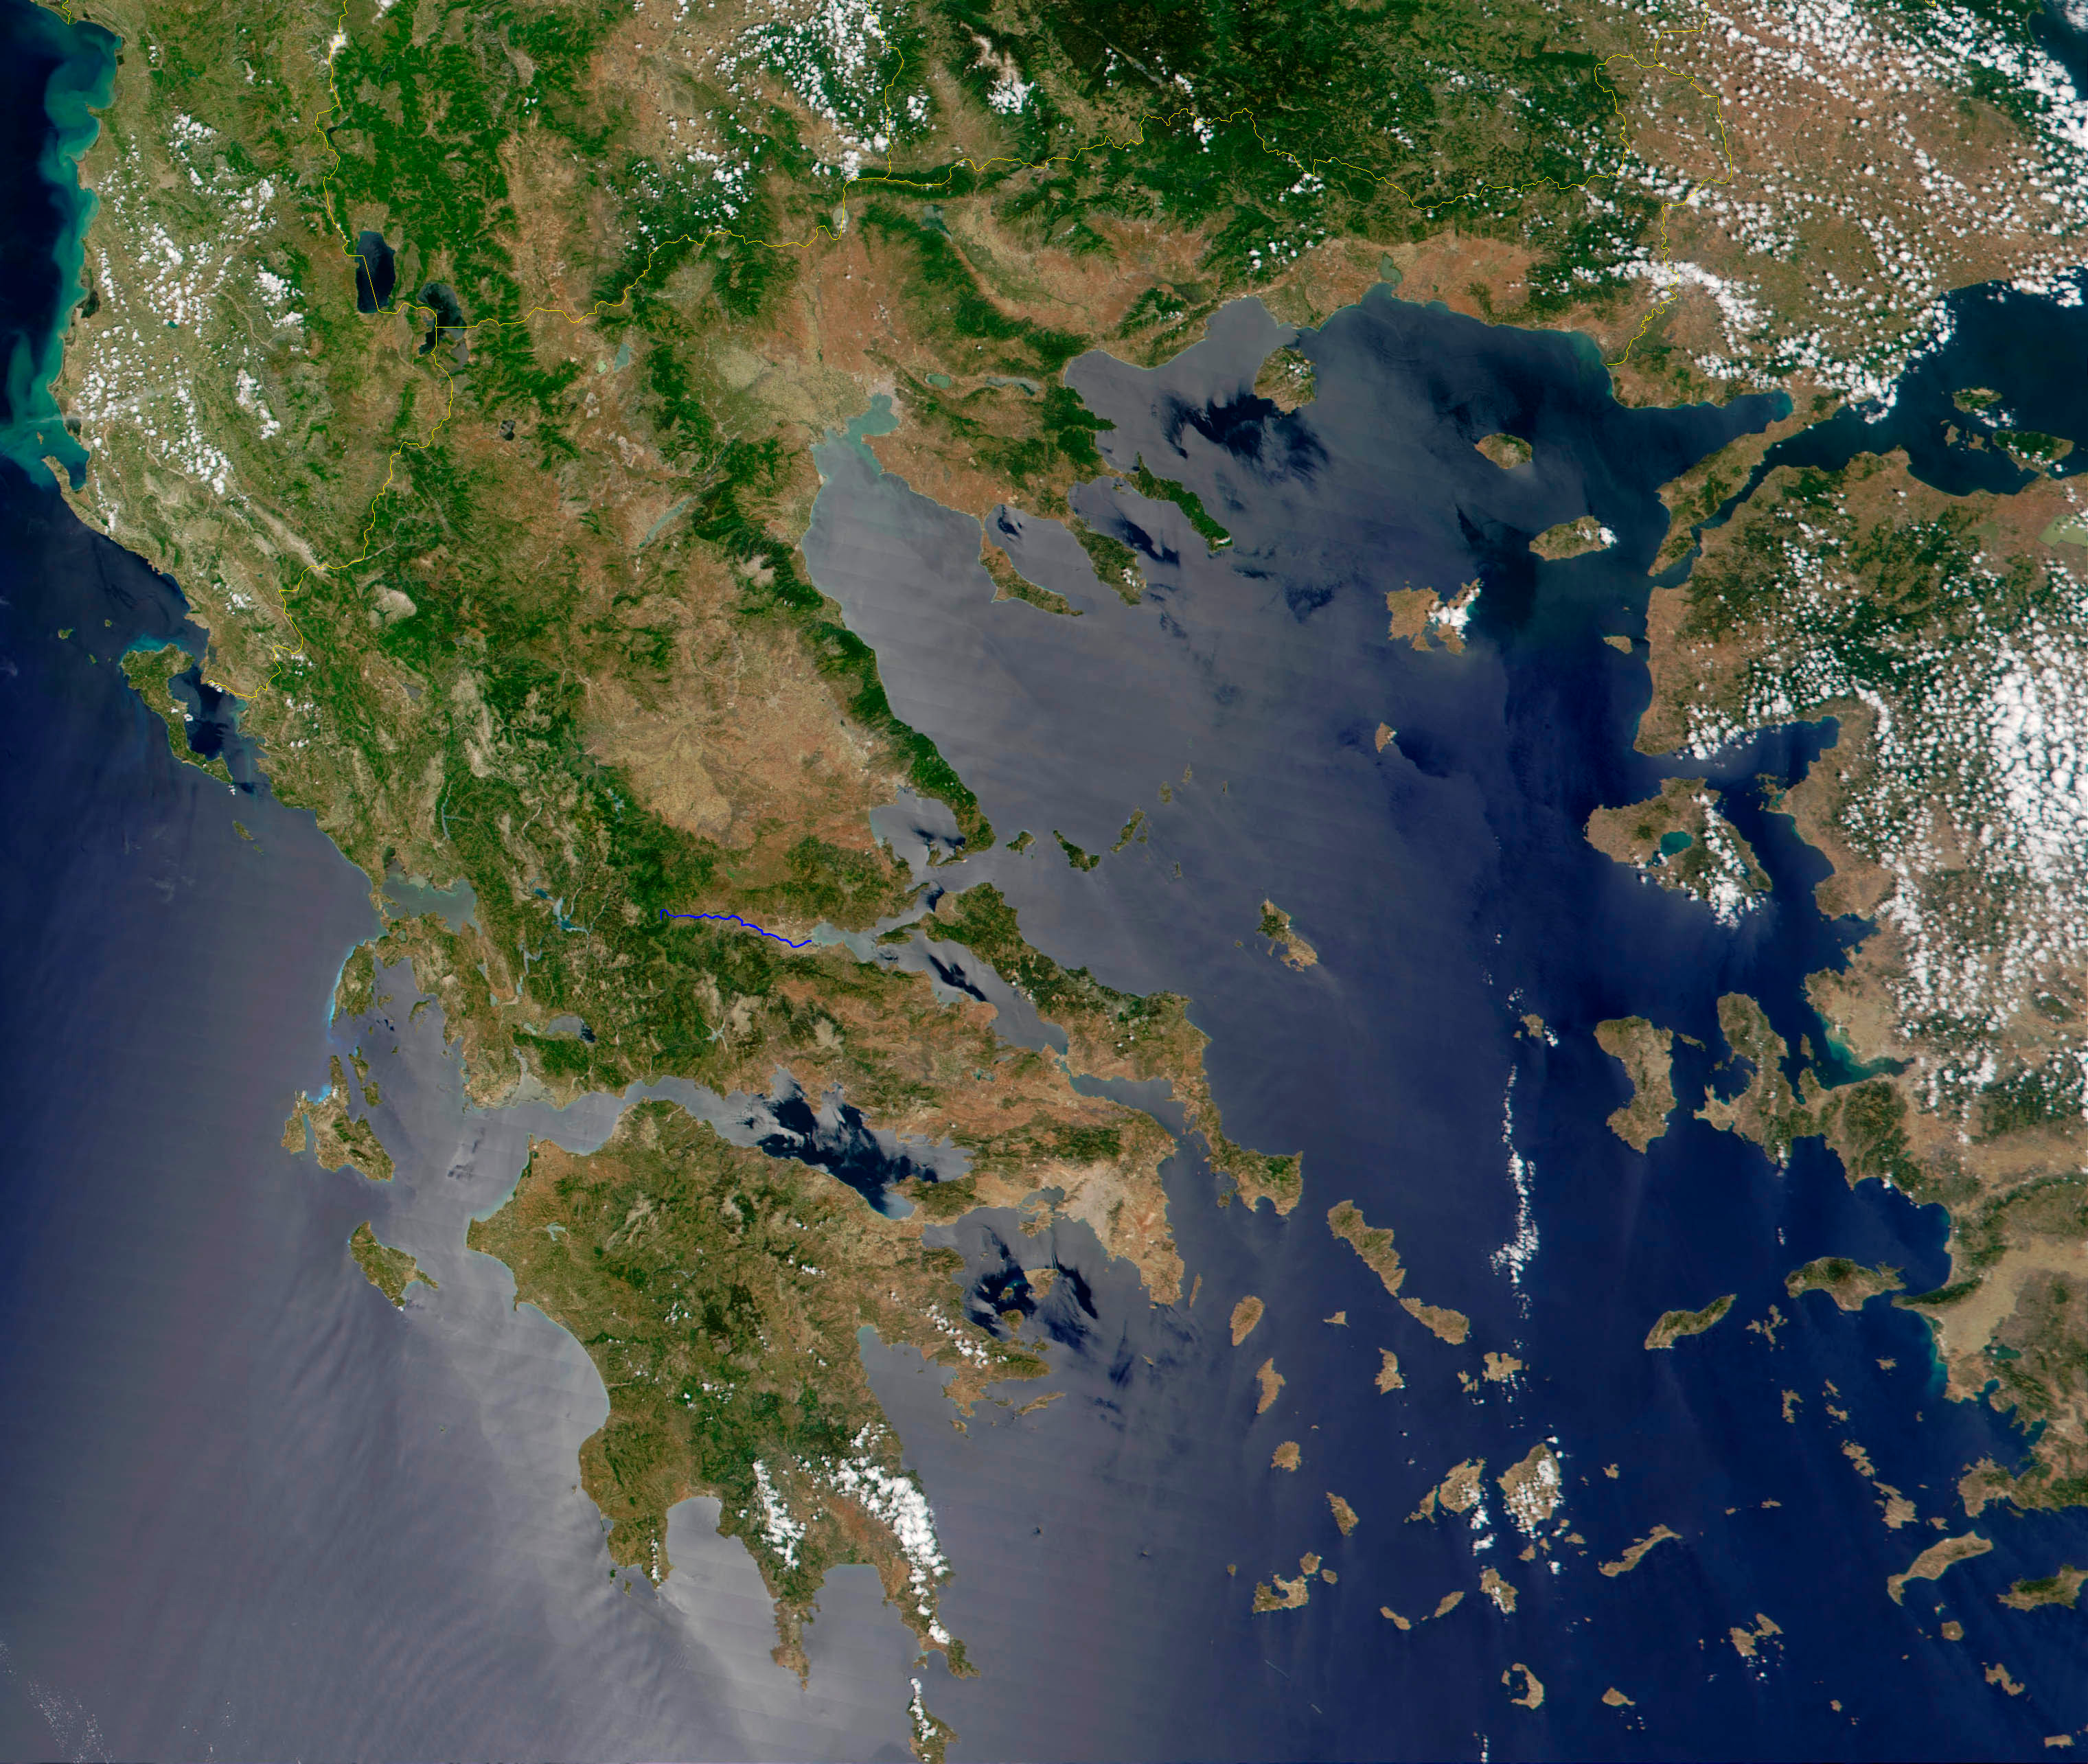 Greece satellite image, credit NASA